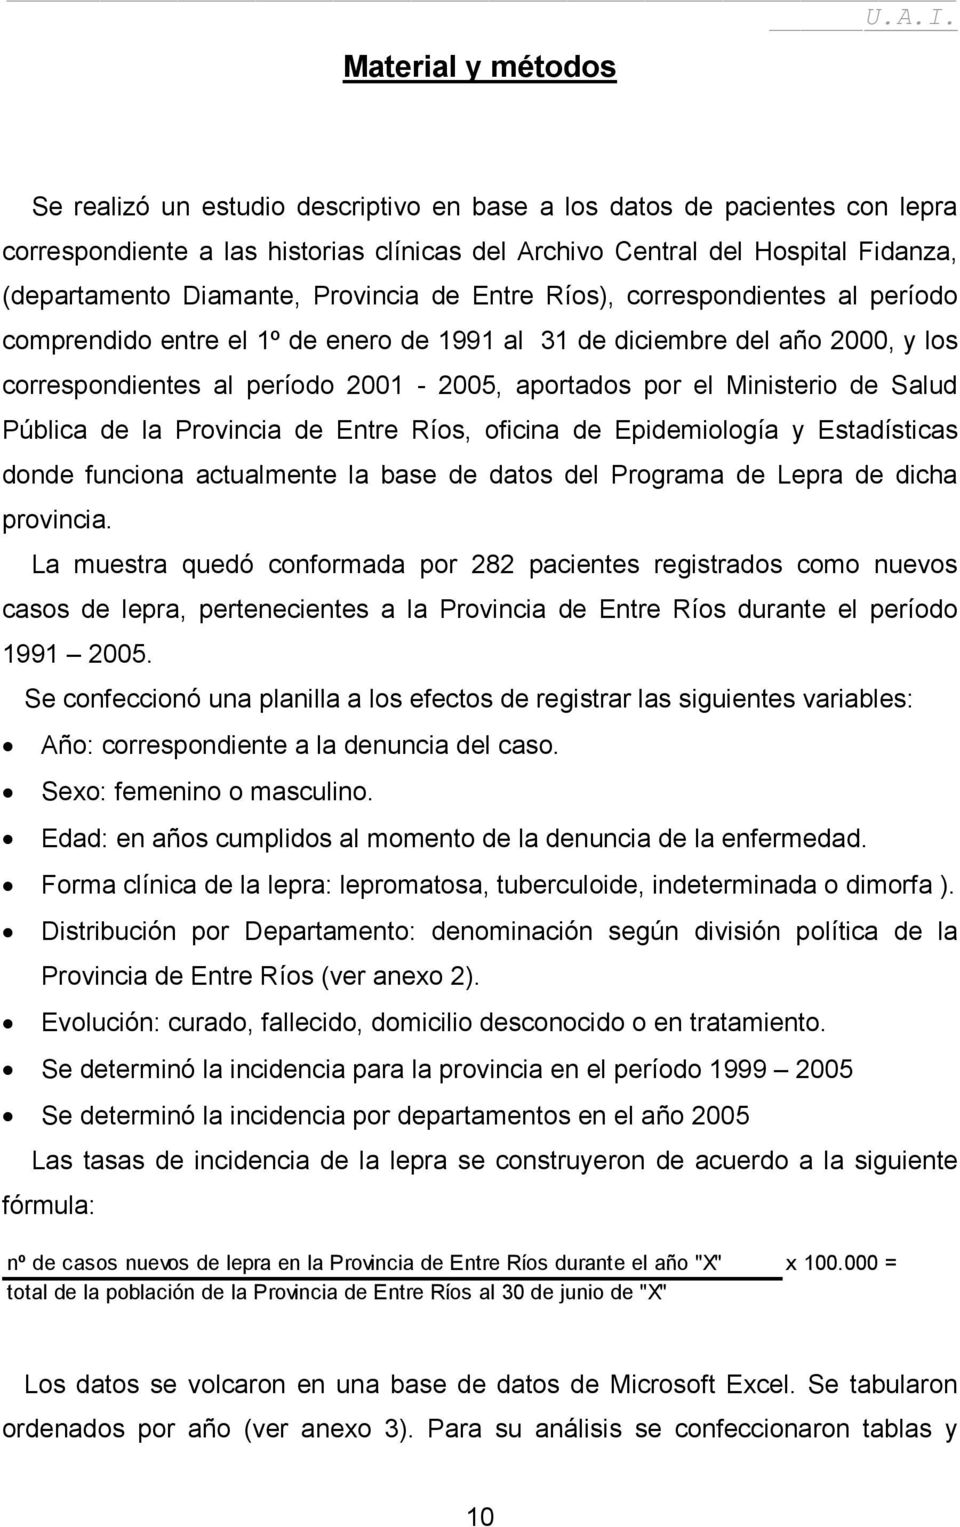 Ministerio de Salud Pública de la Provincia de Entre Ríos, oficina de Epidemiología y Estadísticas donde funciona actualmente la base de datos del Programa de Lepra de dicha provincia.